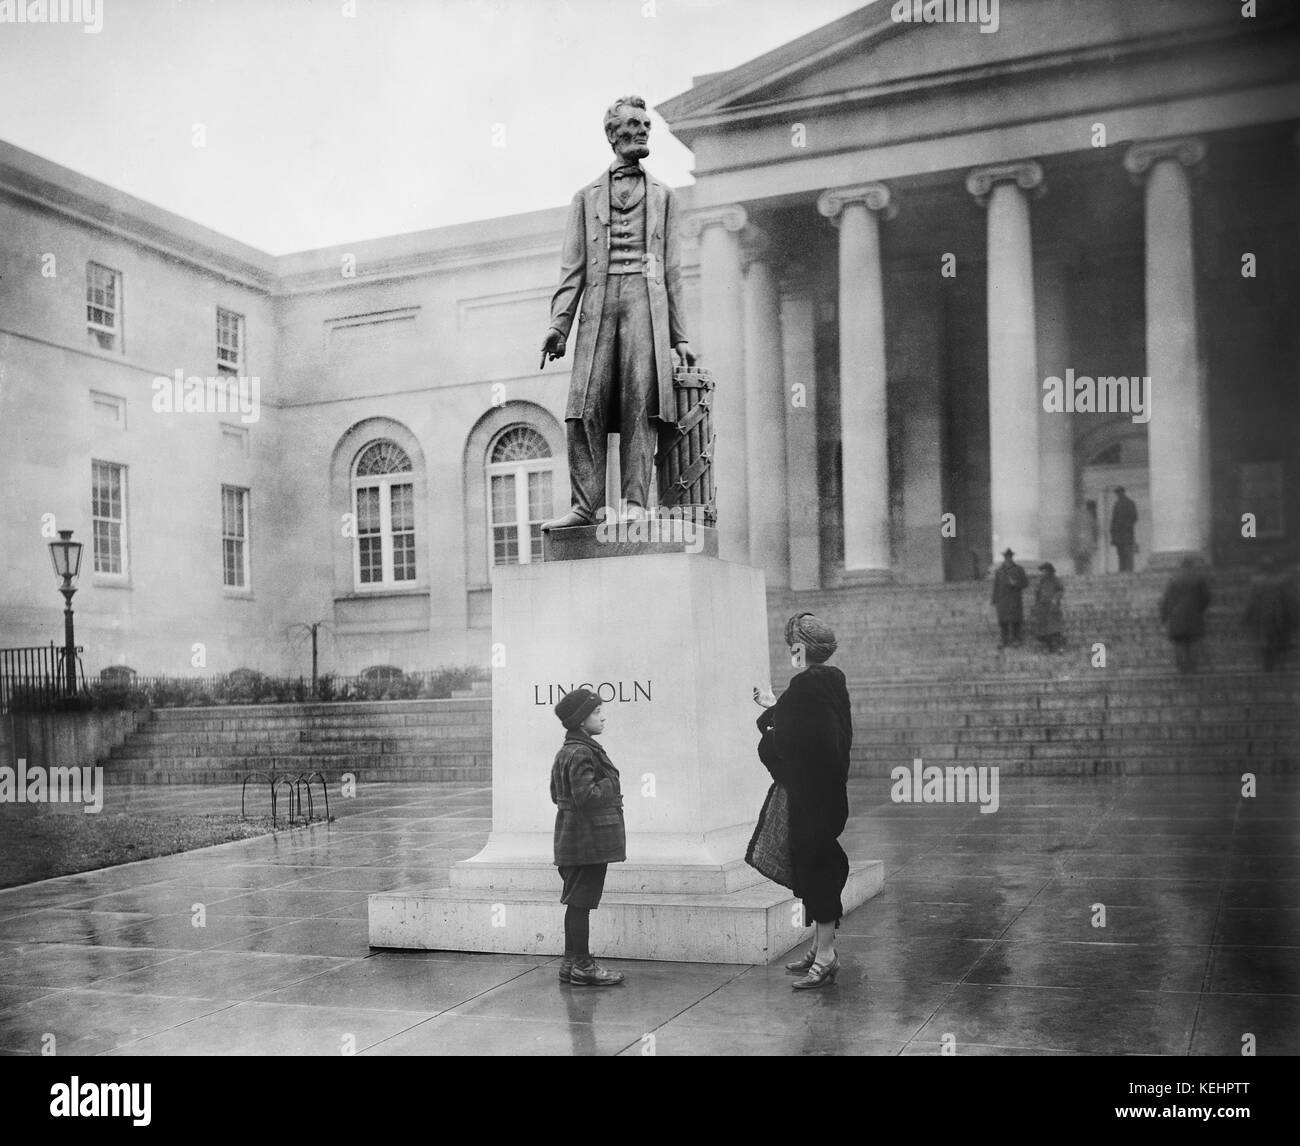 La scultura in marmo di Abraham Lincoln nella parte anteriore del distretto di Columbia City Hall, Washington dc, Stati Uniti d'America, Harris & Ewing, 1923 Foto Stock